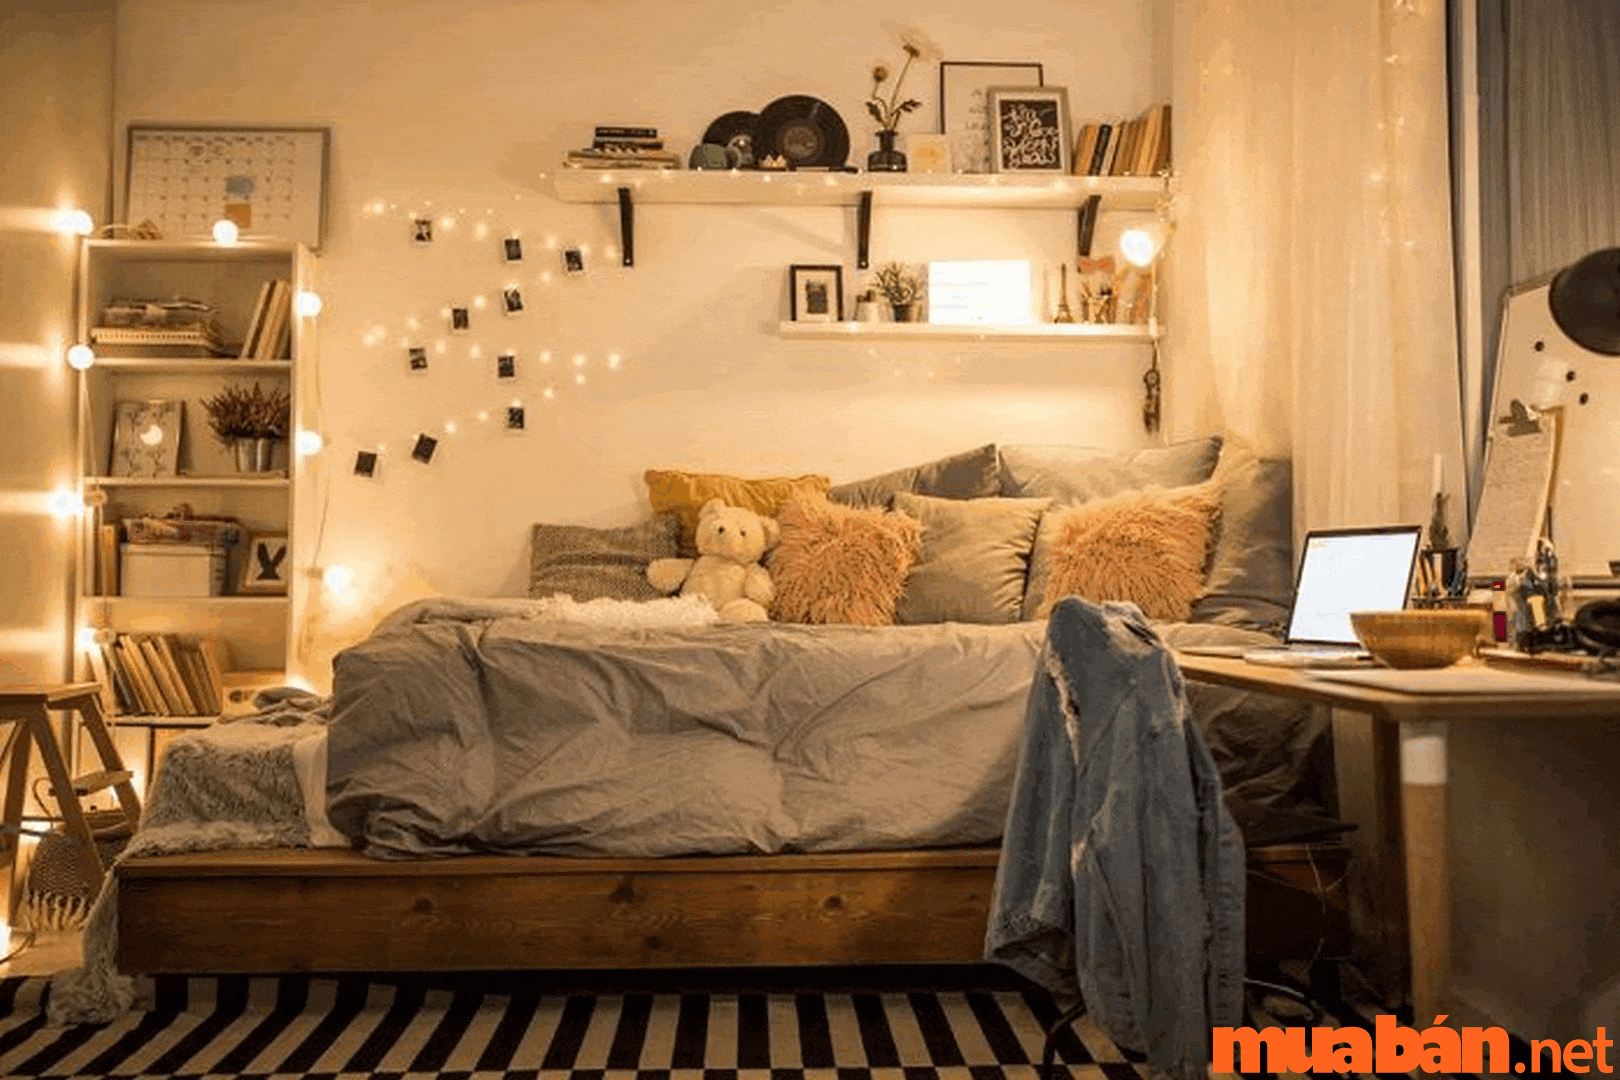 Việc sử dụng đèn led để trang trí phòng ngủ được các bạn trẻ rất ưu thích